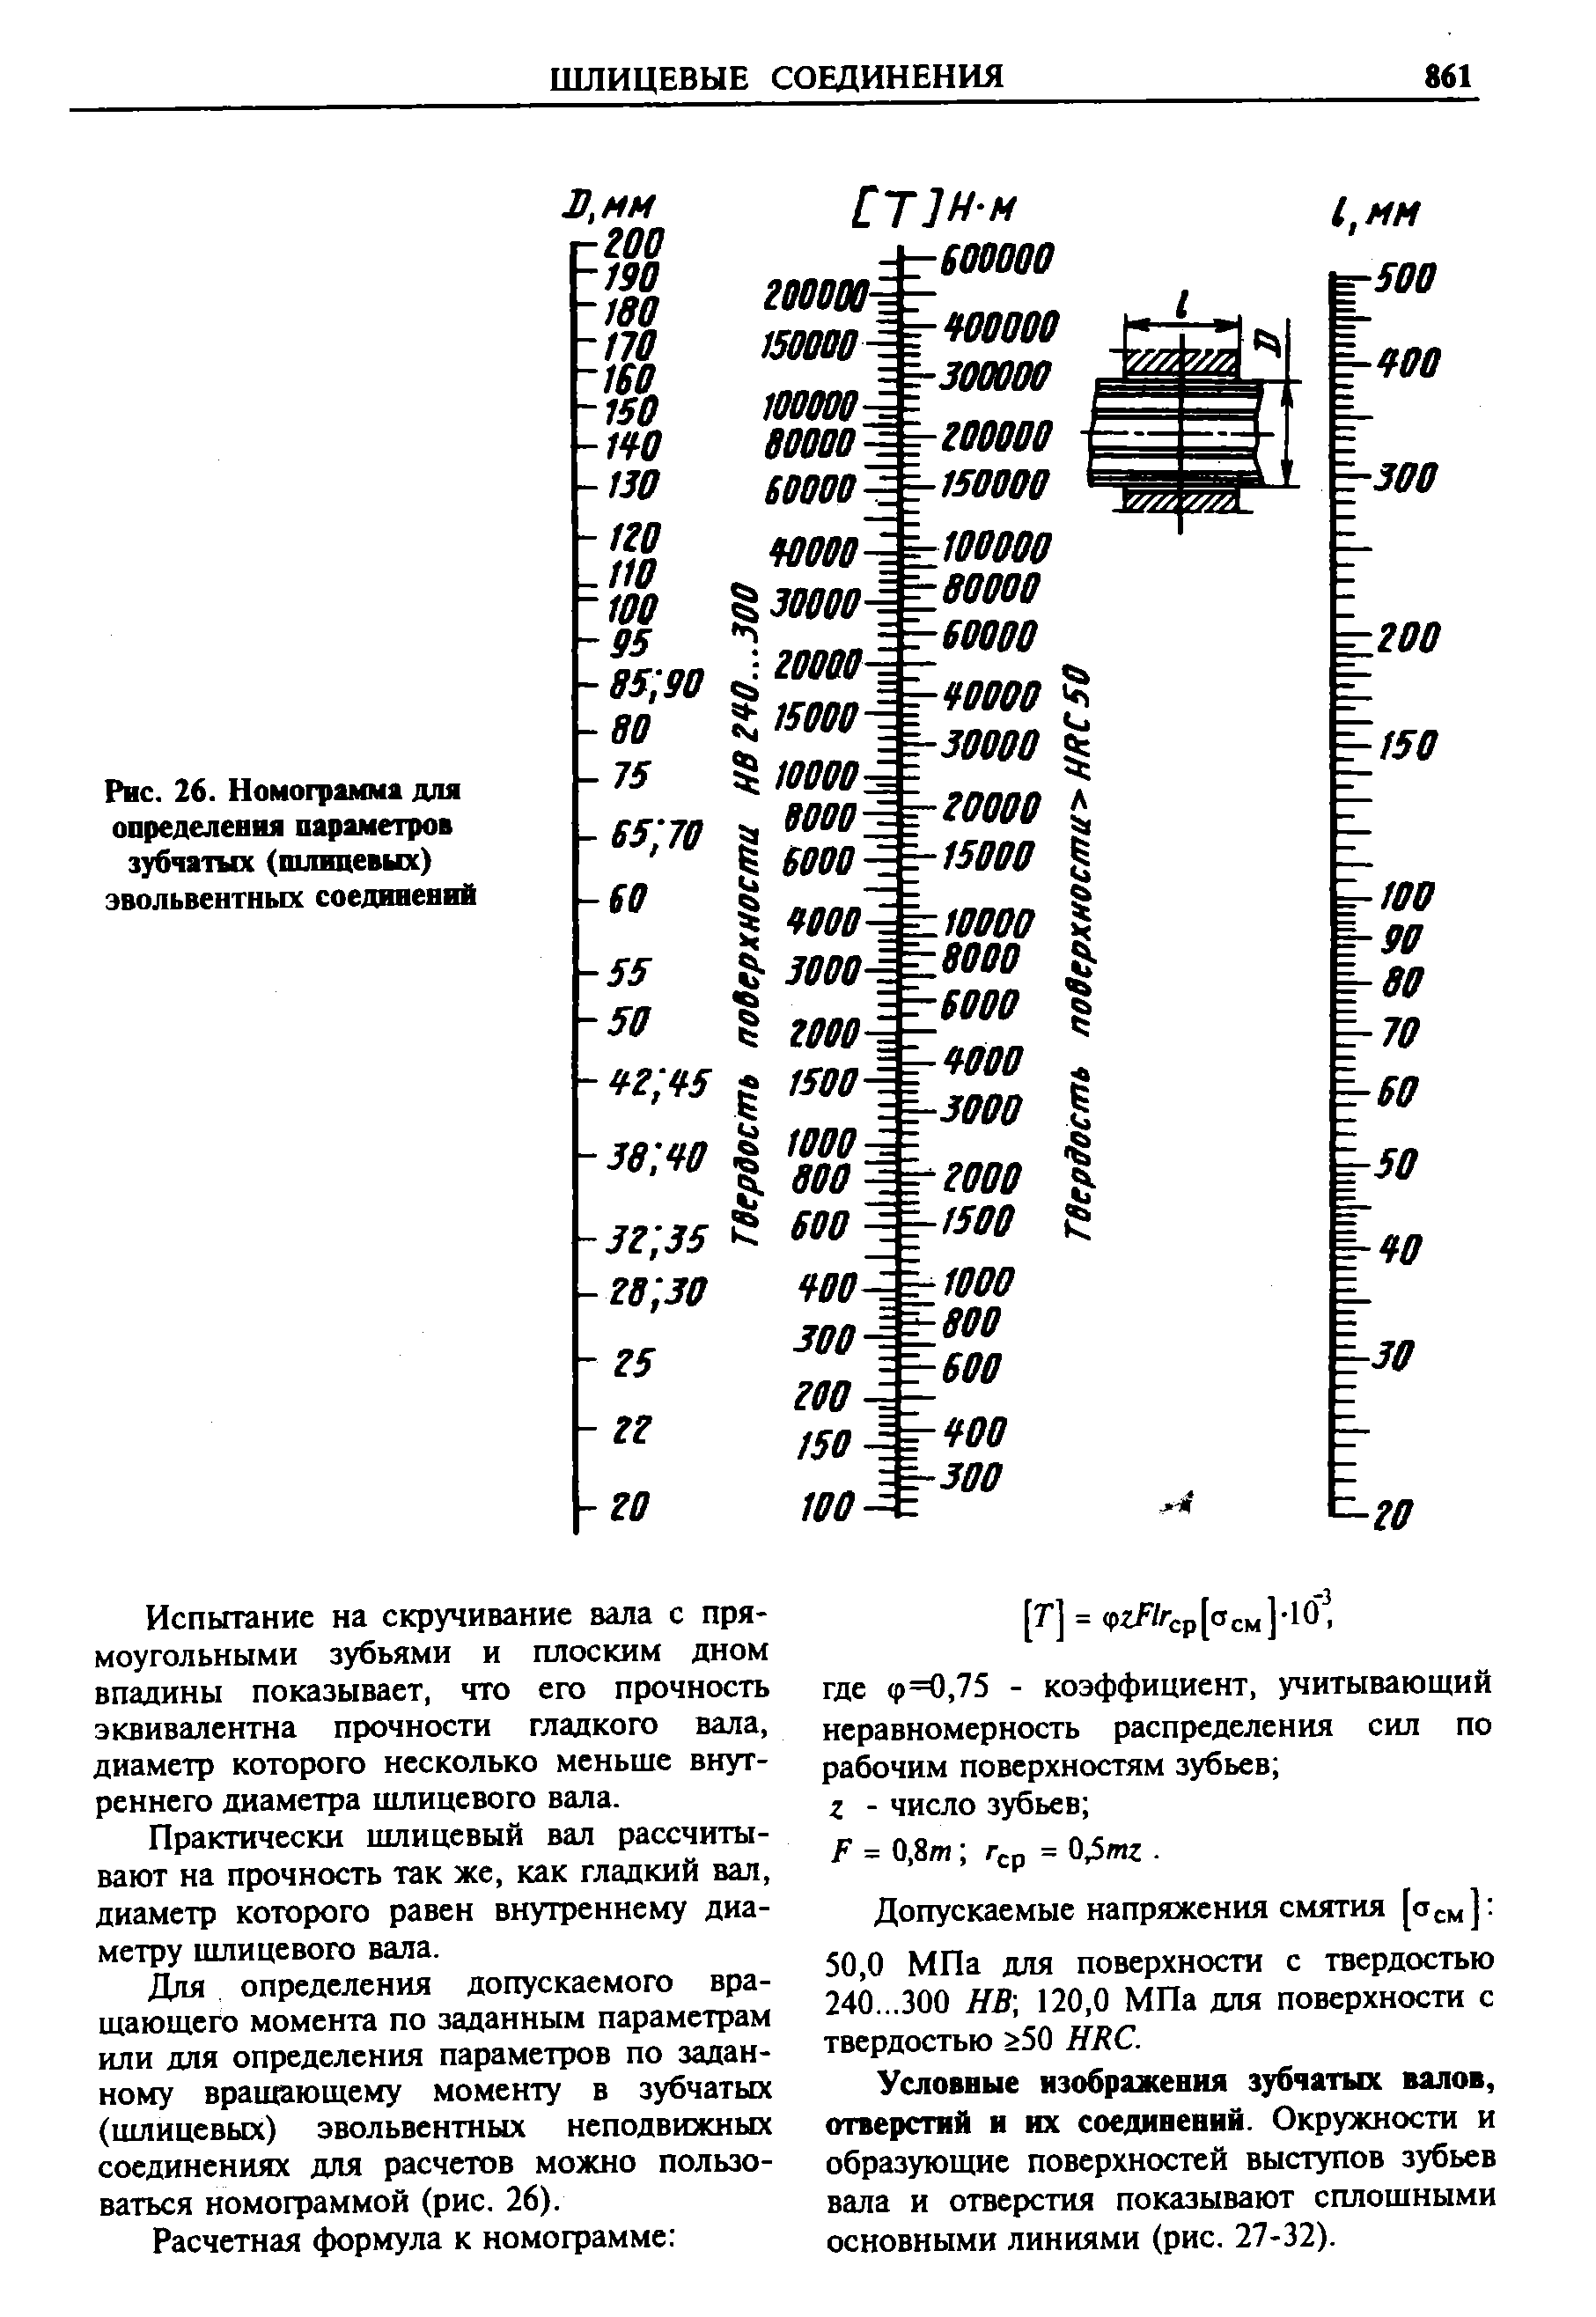 Рис. 26. Номограмма для определения <a href="/info/212124">параметров зубчатых</a> (nuameaiix) эвольвентных соединений
